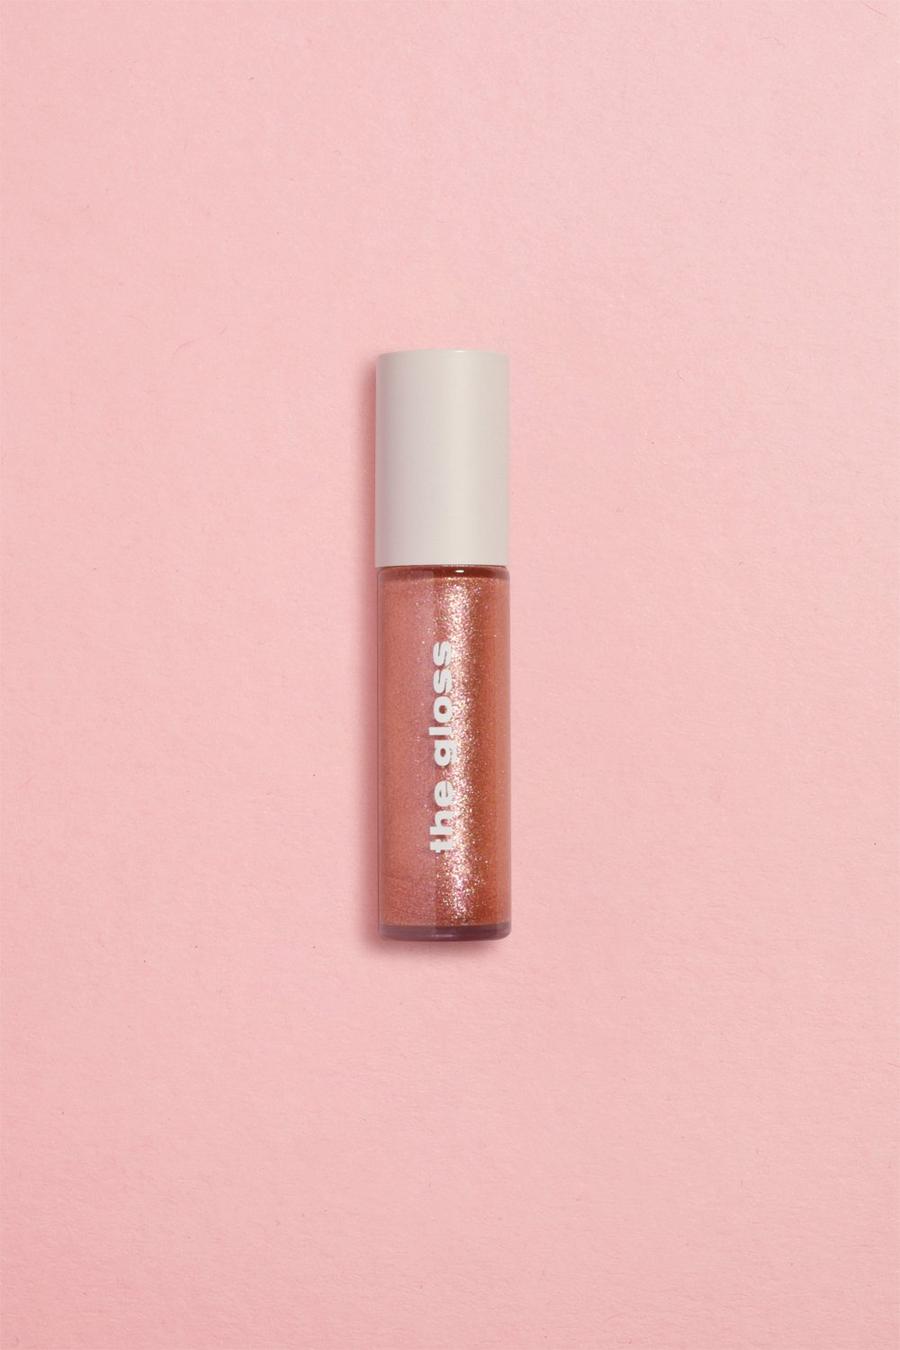 Boohoo Beauty Lipgloss - Rose Shimmer